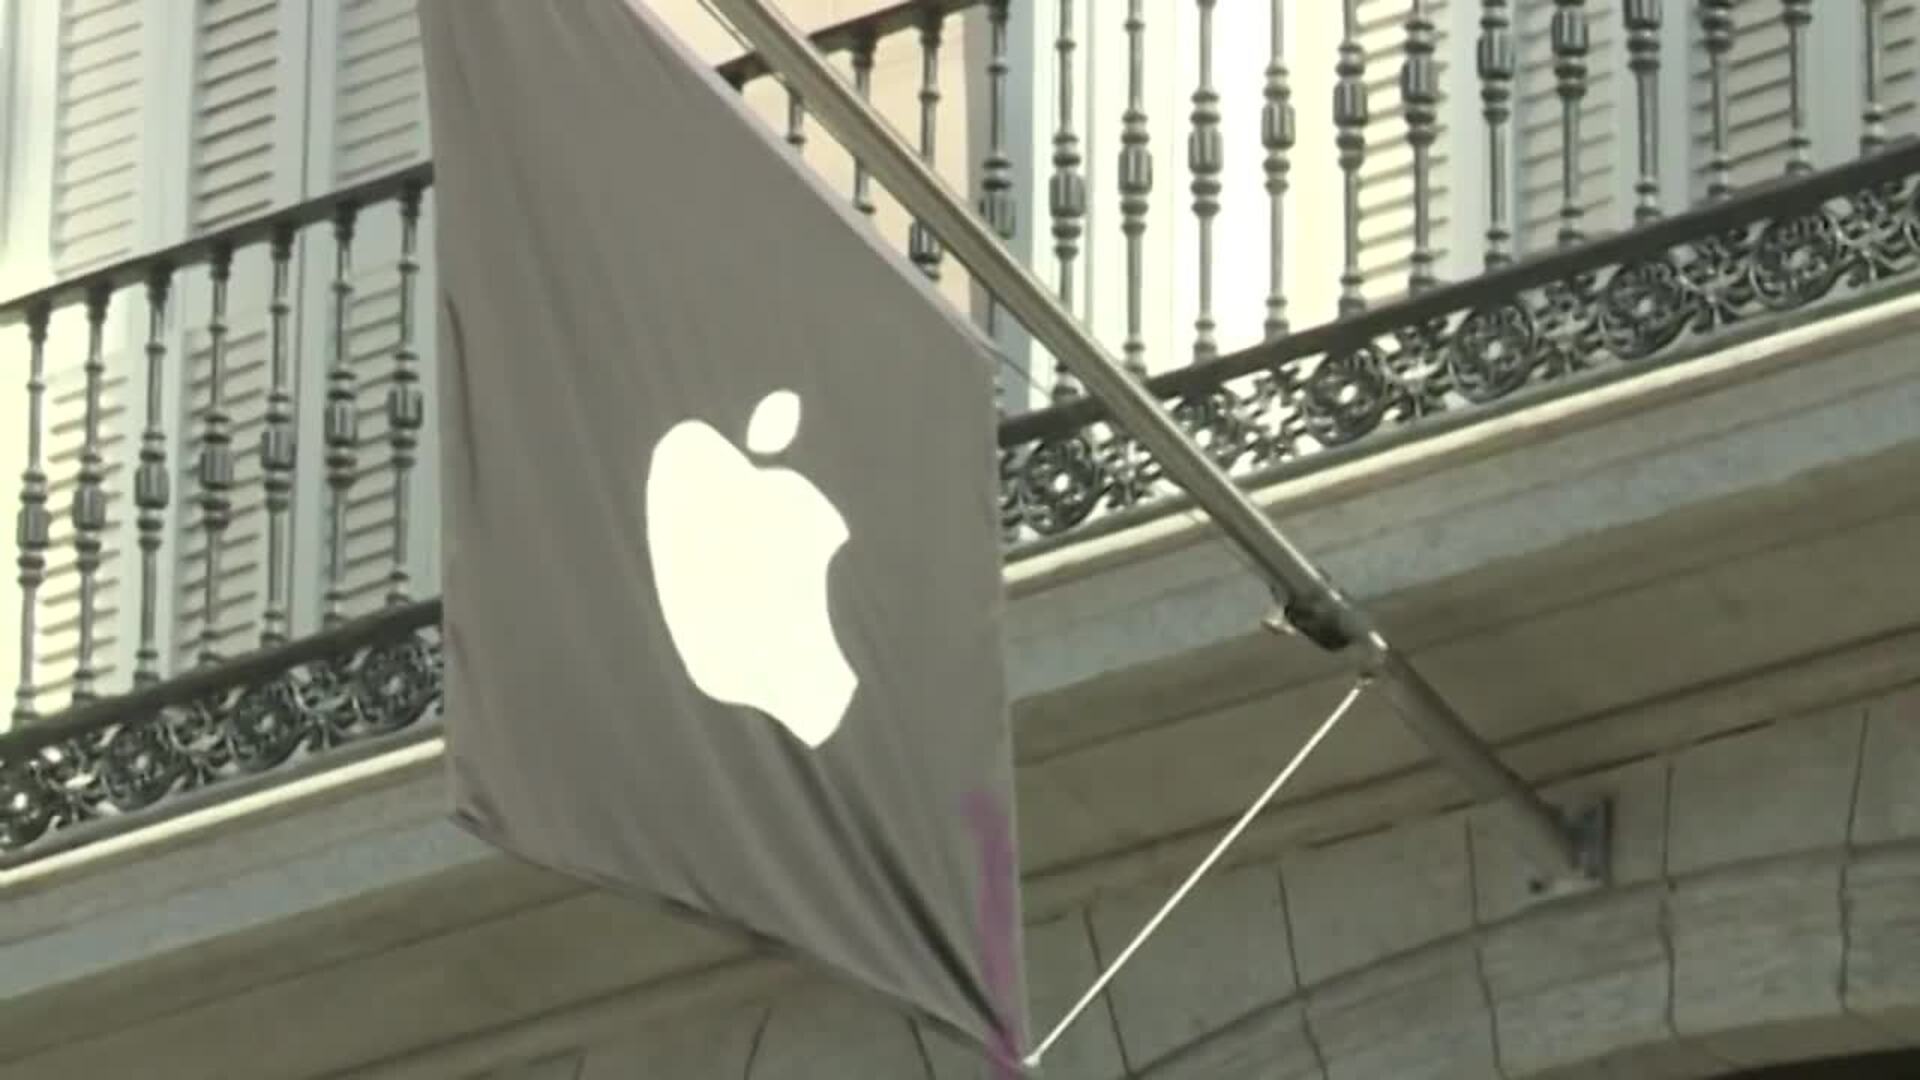 EE.UU. demanda a Apple por violar leyes antimonopolio y la empresa se defenderá "enérgicamente"